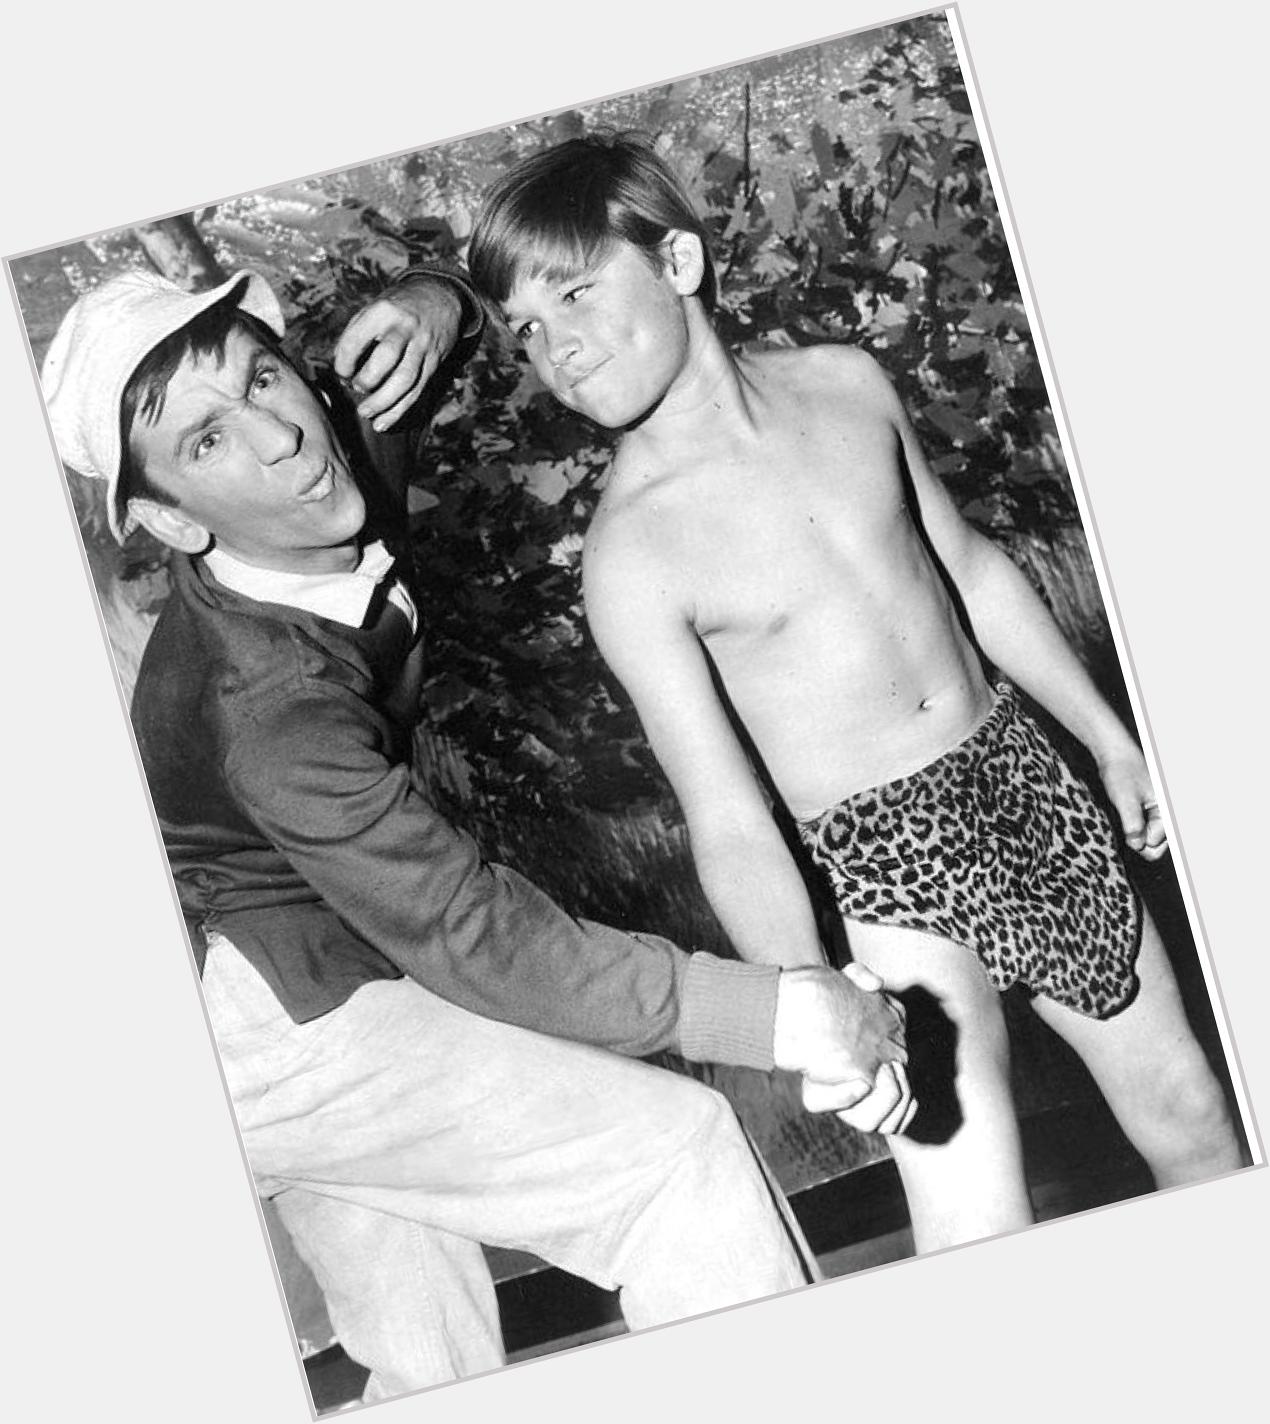 Der junge Mann (rechts) ist seit heute 64 - Happy Birthday, Kurt Russell! 